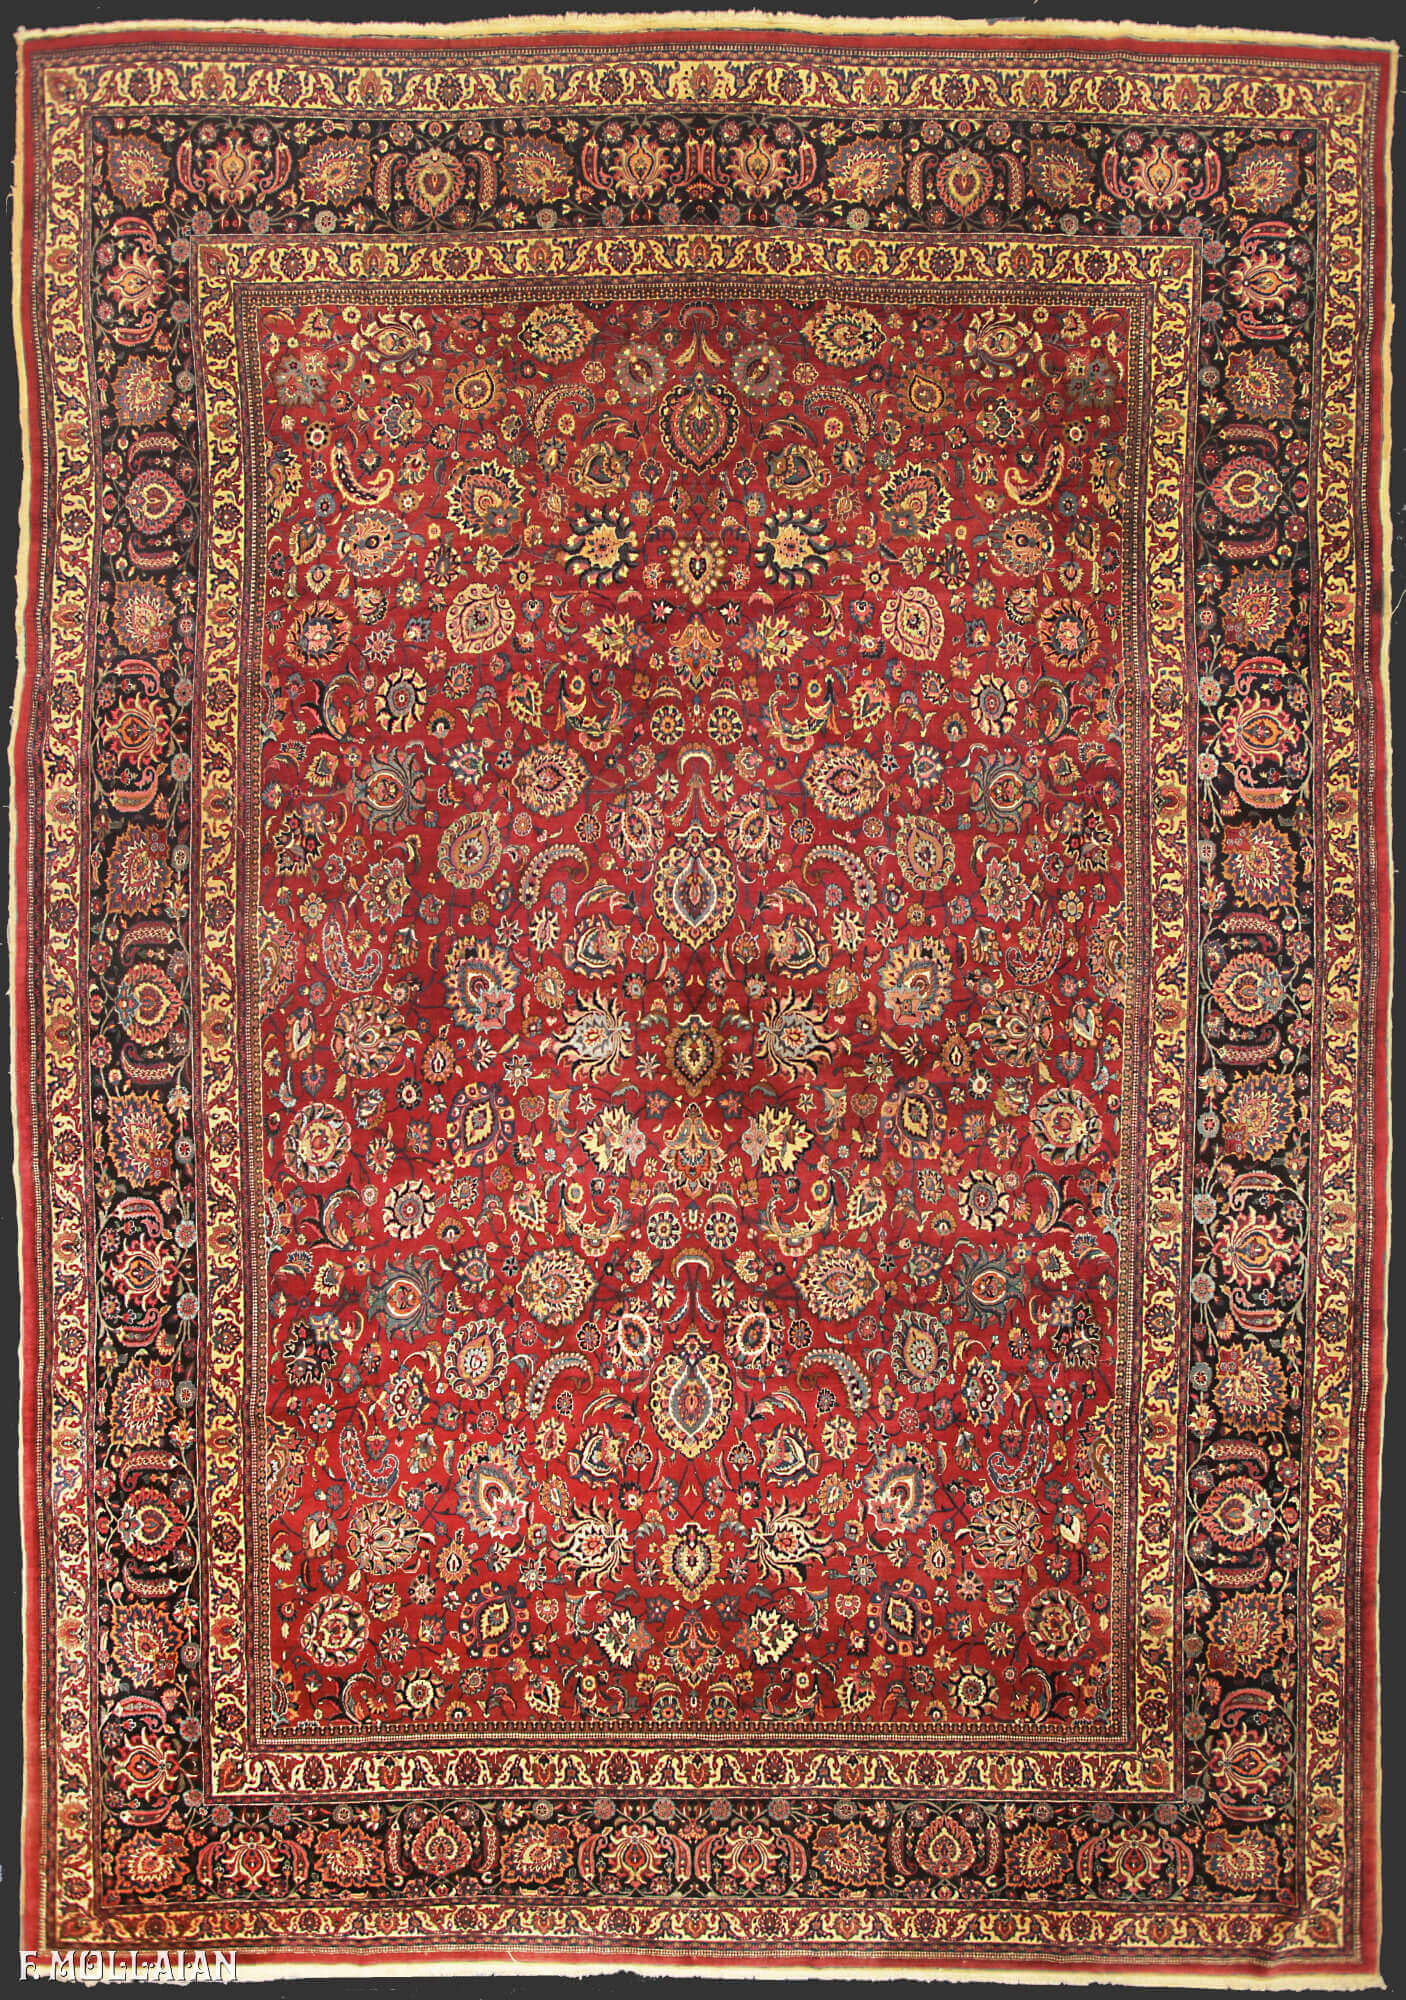 Antique Persian Mashad Carpet n°:82953011